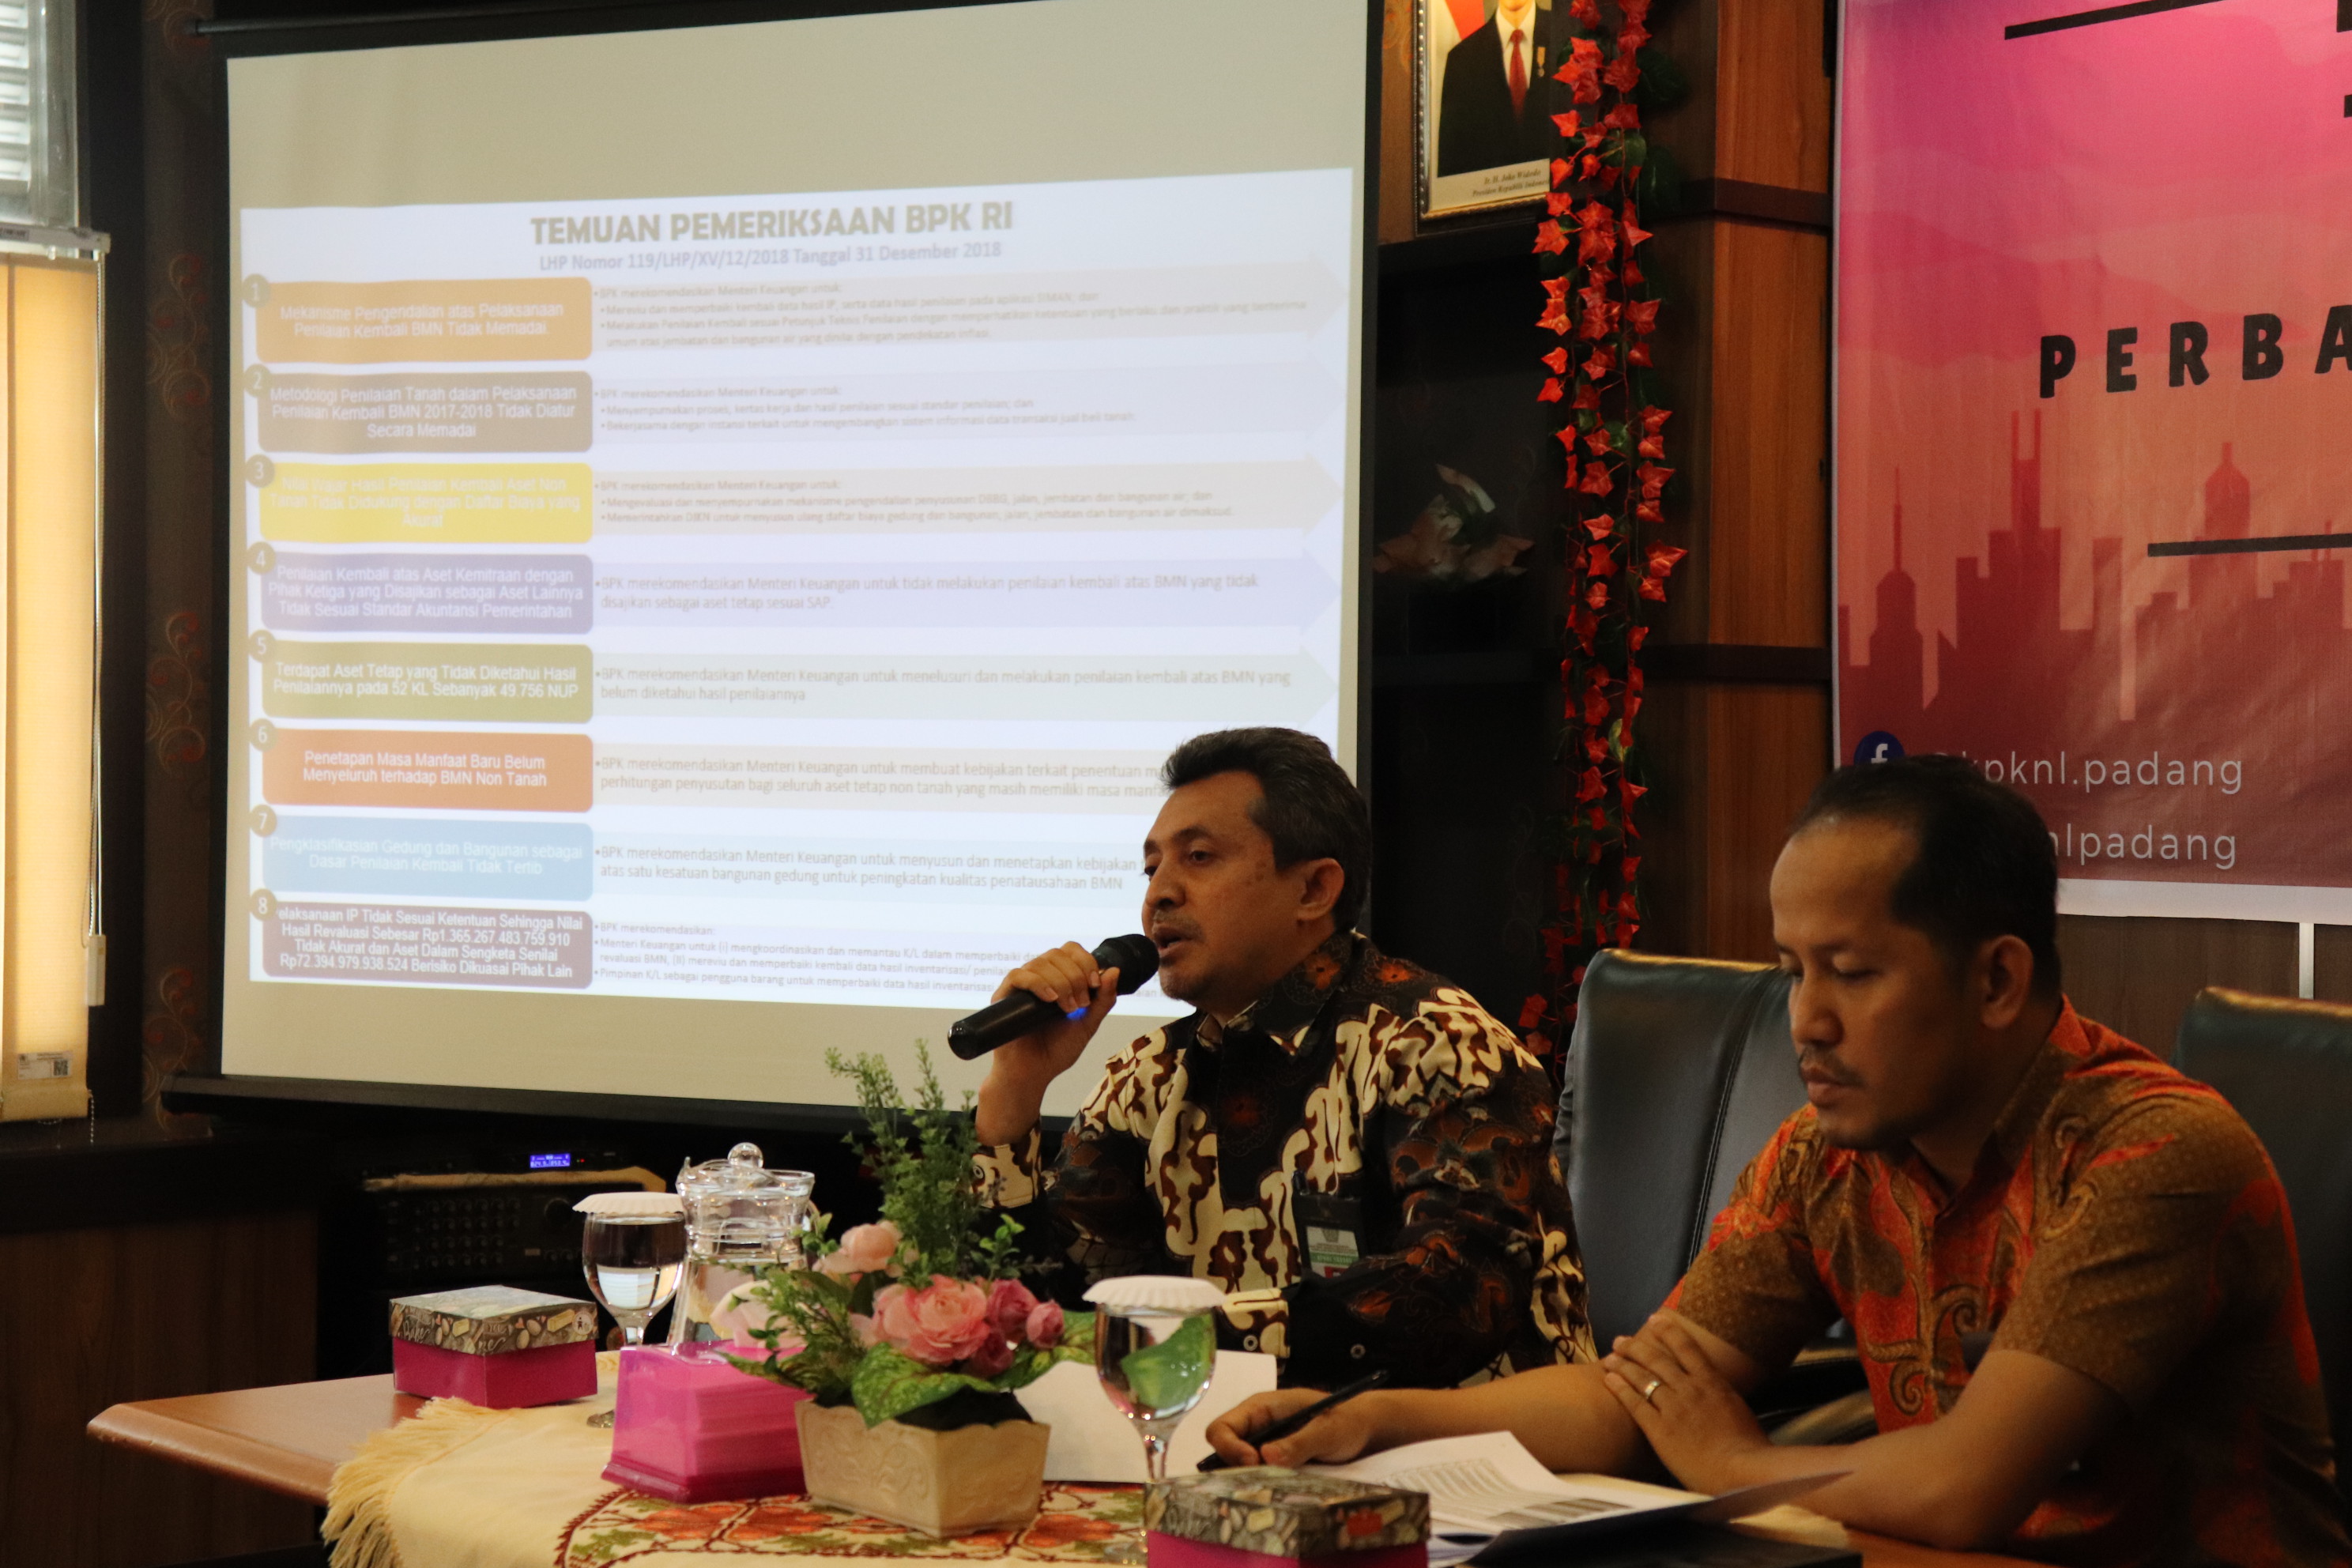 Tuntaskan Revaluasi BMN, KPKNL Padang Adakan Rapat Koordinasi Tindak Lanjut Perbaikan Revaluasi BMN 2017/2018